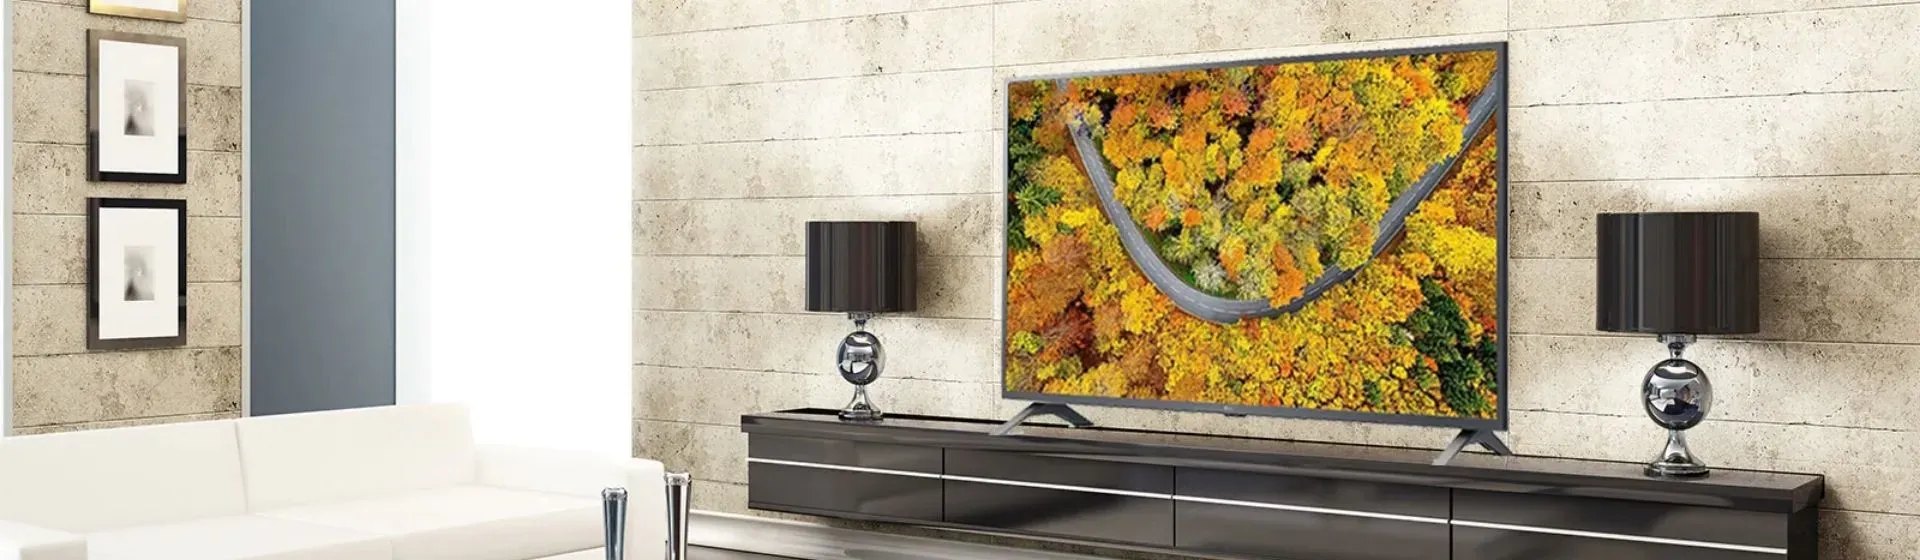 Samsung AU8000 vs LG UP7750: qual das TVs ganha como melhor 4K custo-benefício?